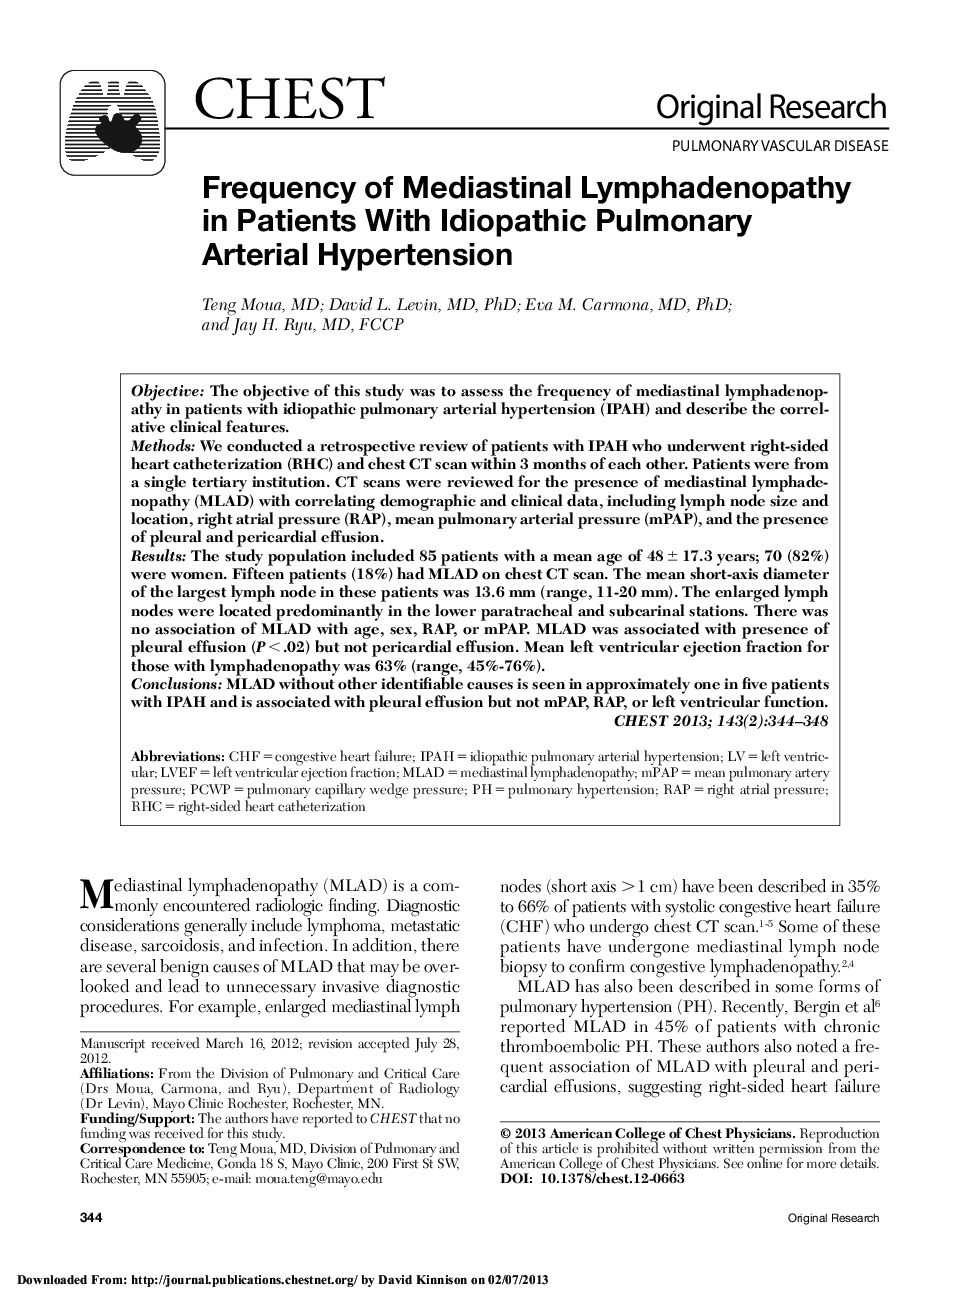 تحقیقات اصلی بیماری عروق ریوی فراوانی لنفادنوپاتی مدیاستین در بیماران مبتلا به فشارخون زیر شریان ریوی ریه 